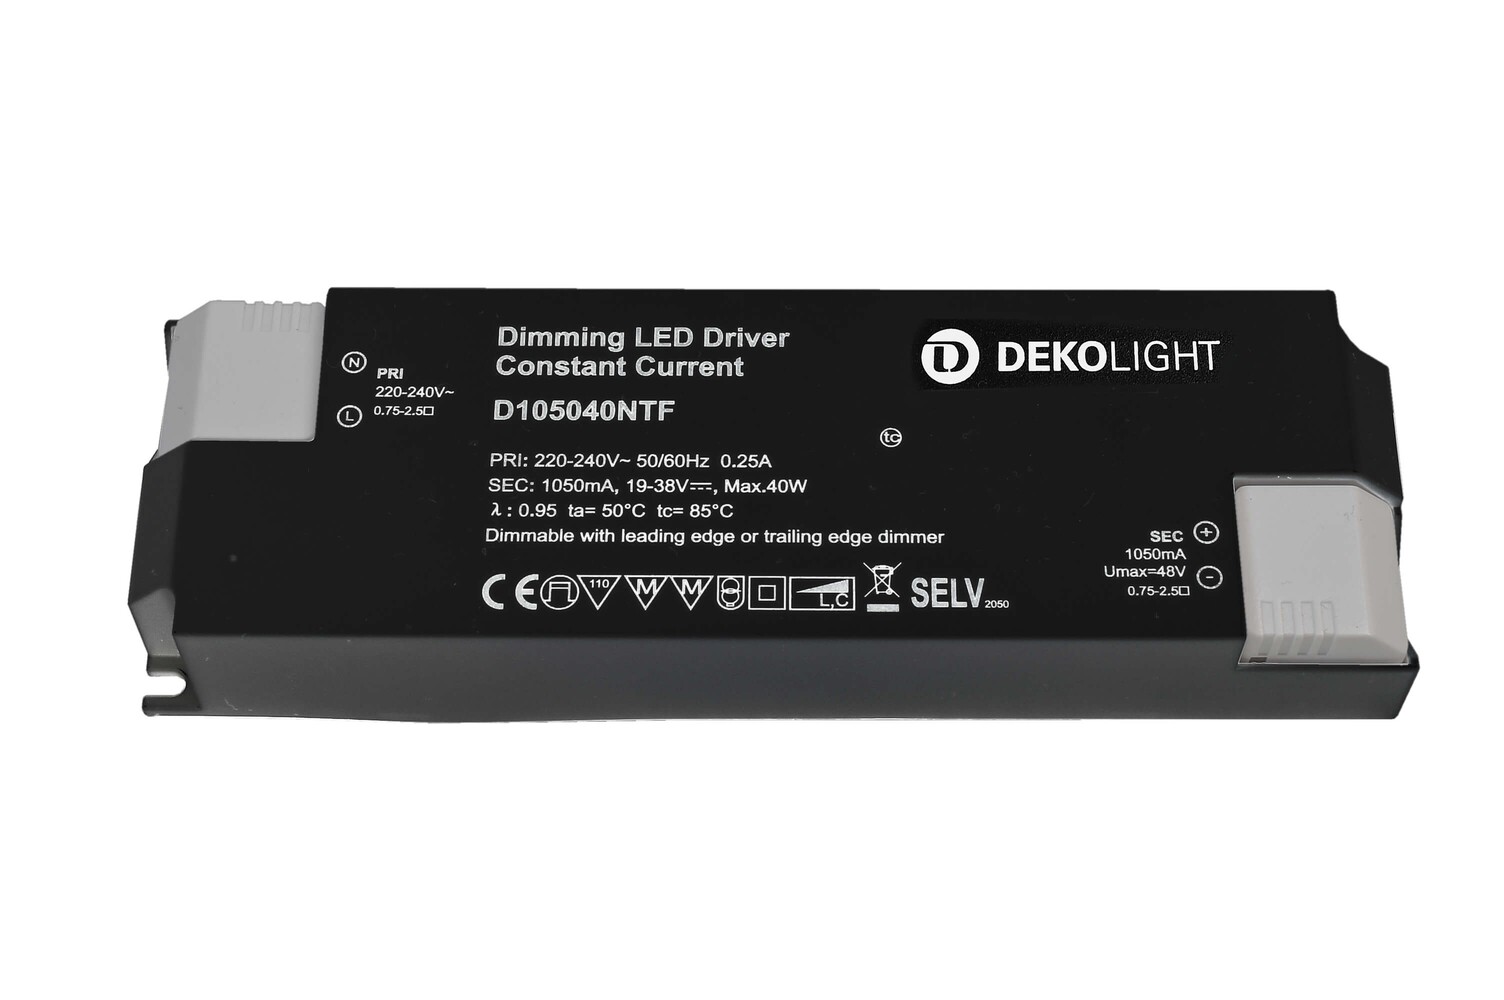 Ein effizientes und dimmbares LED-Netzteil der Marke Deko-Light